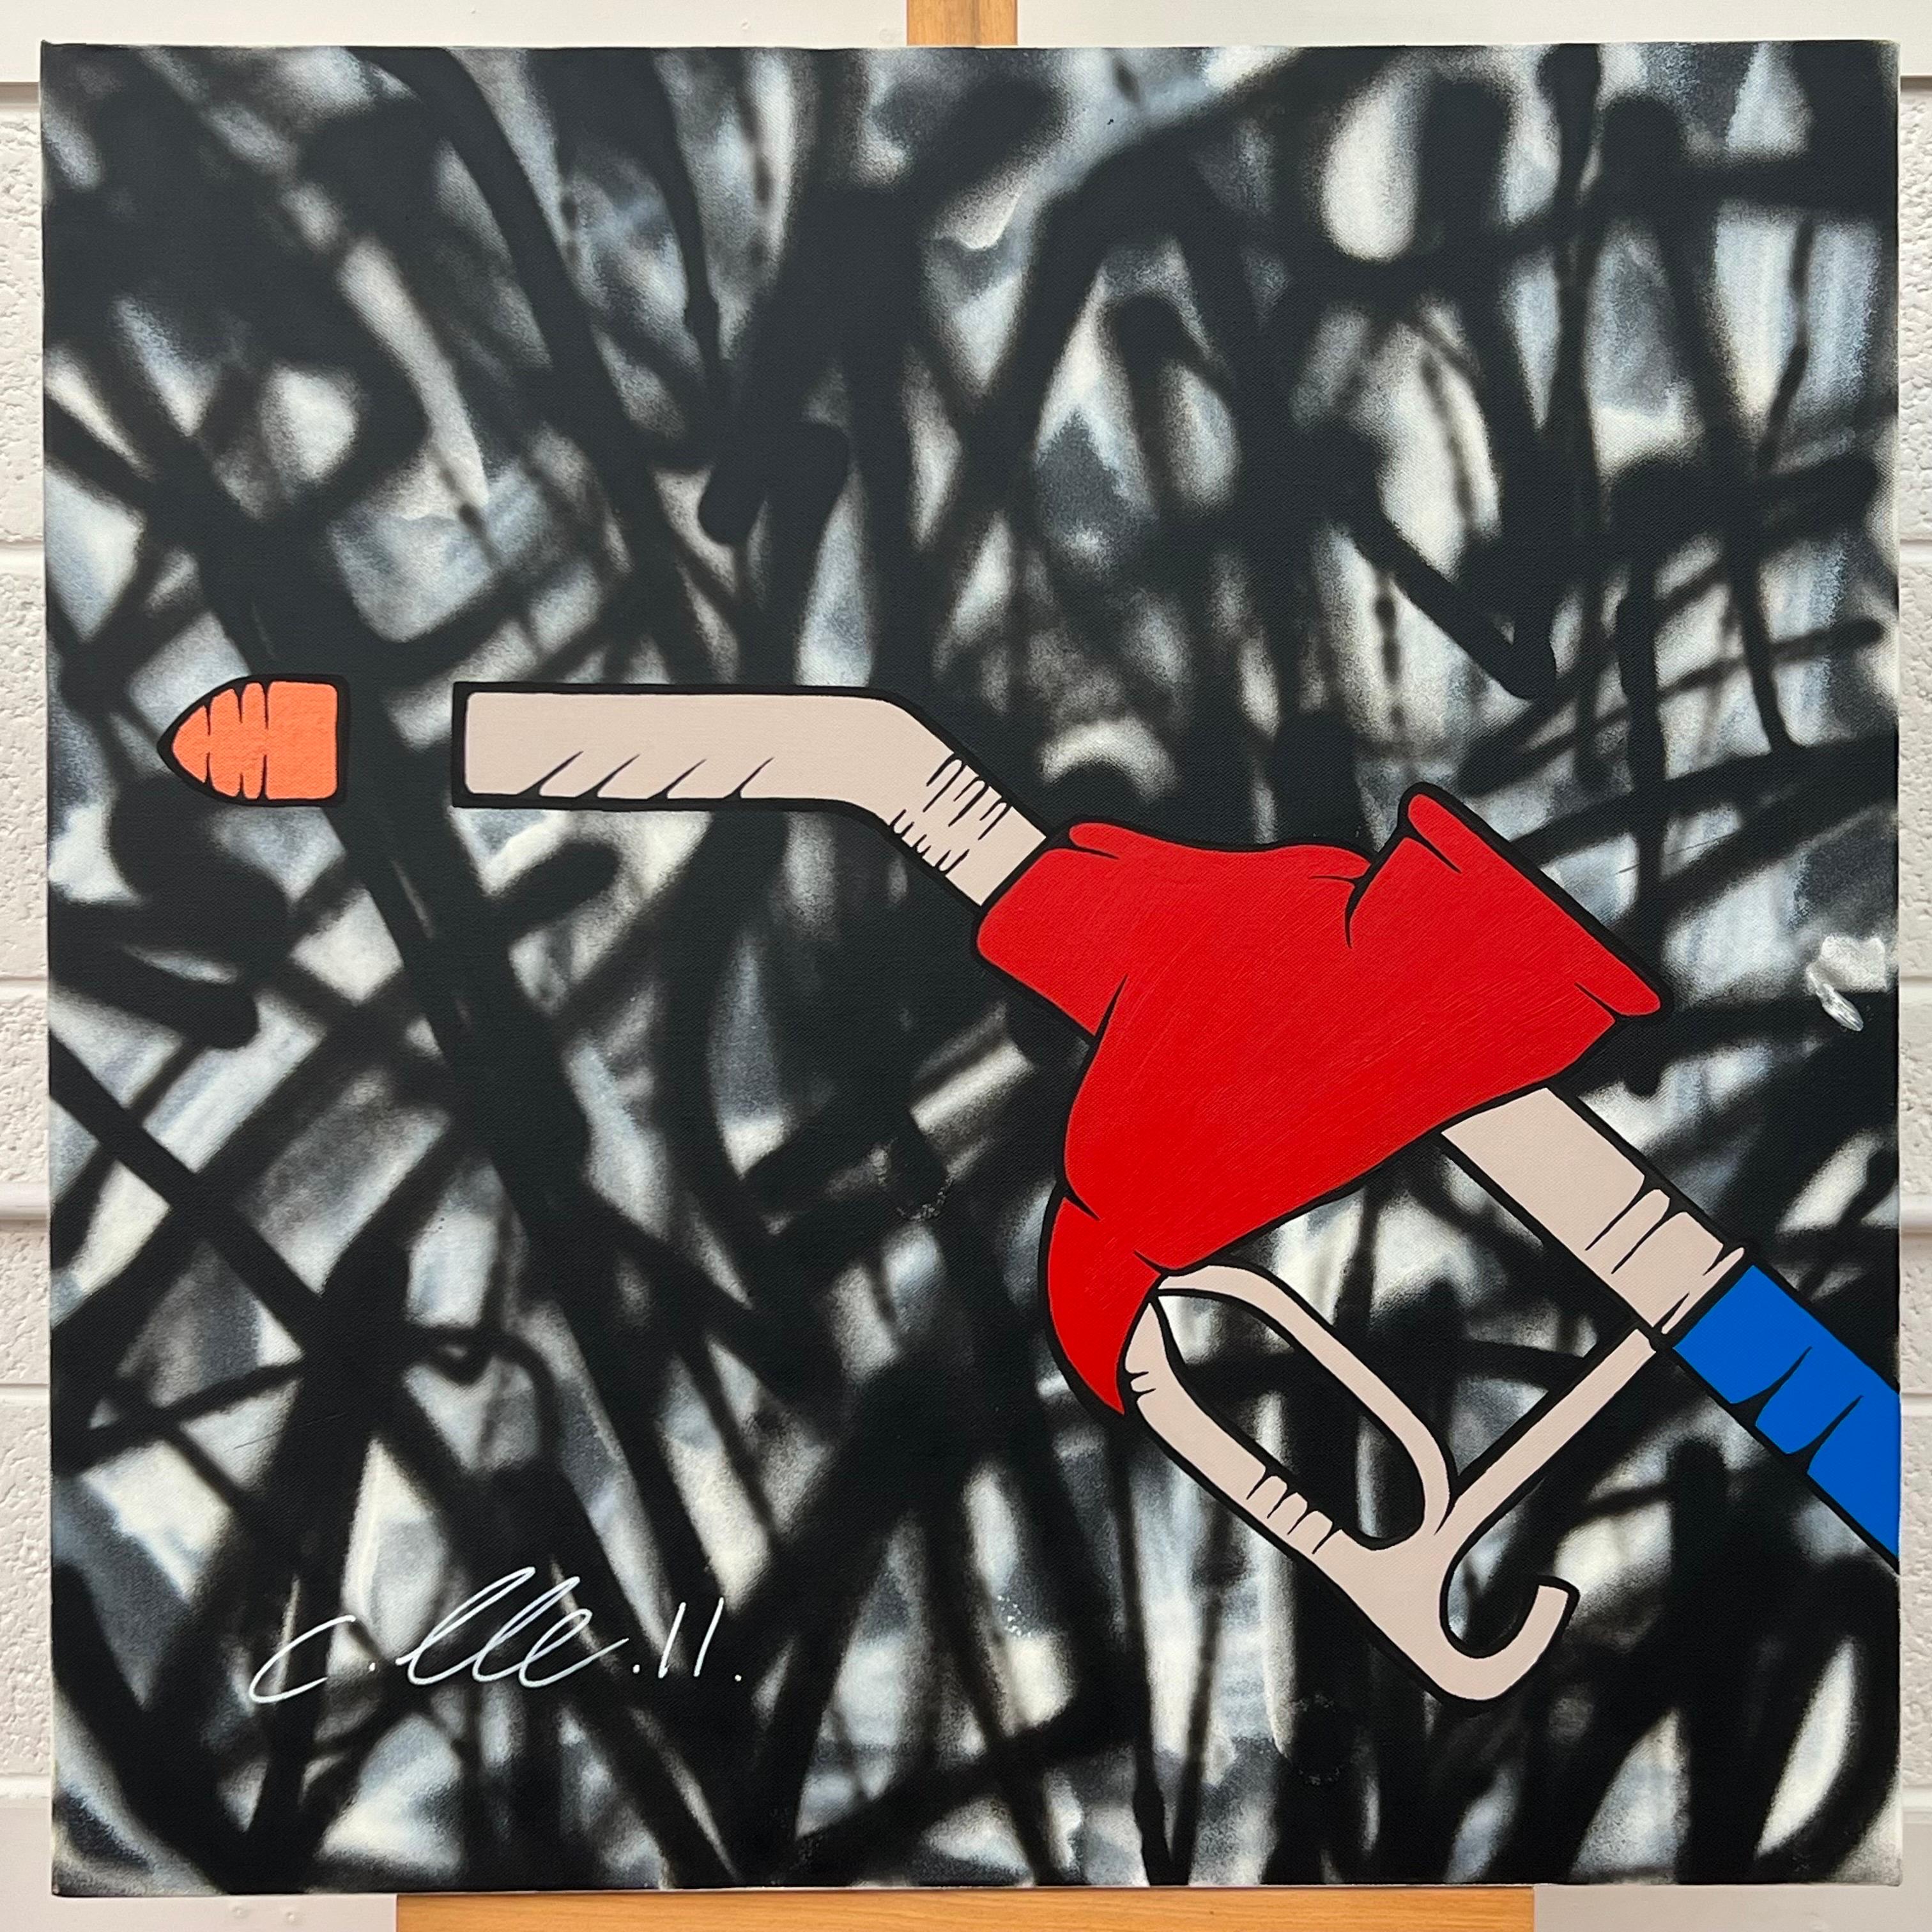 Öl- Gas-Flammen-Pump-Kunst auf abstraktem Hintergrund des britischen Graffiti-Künstlers – Painting von Chris Pegg